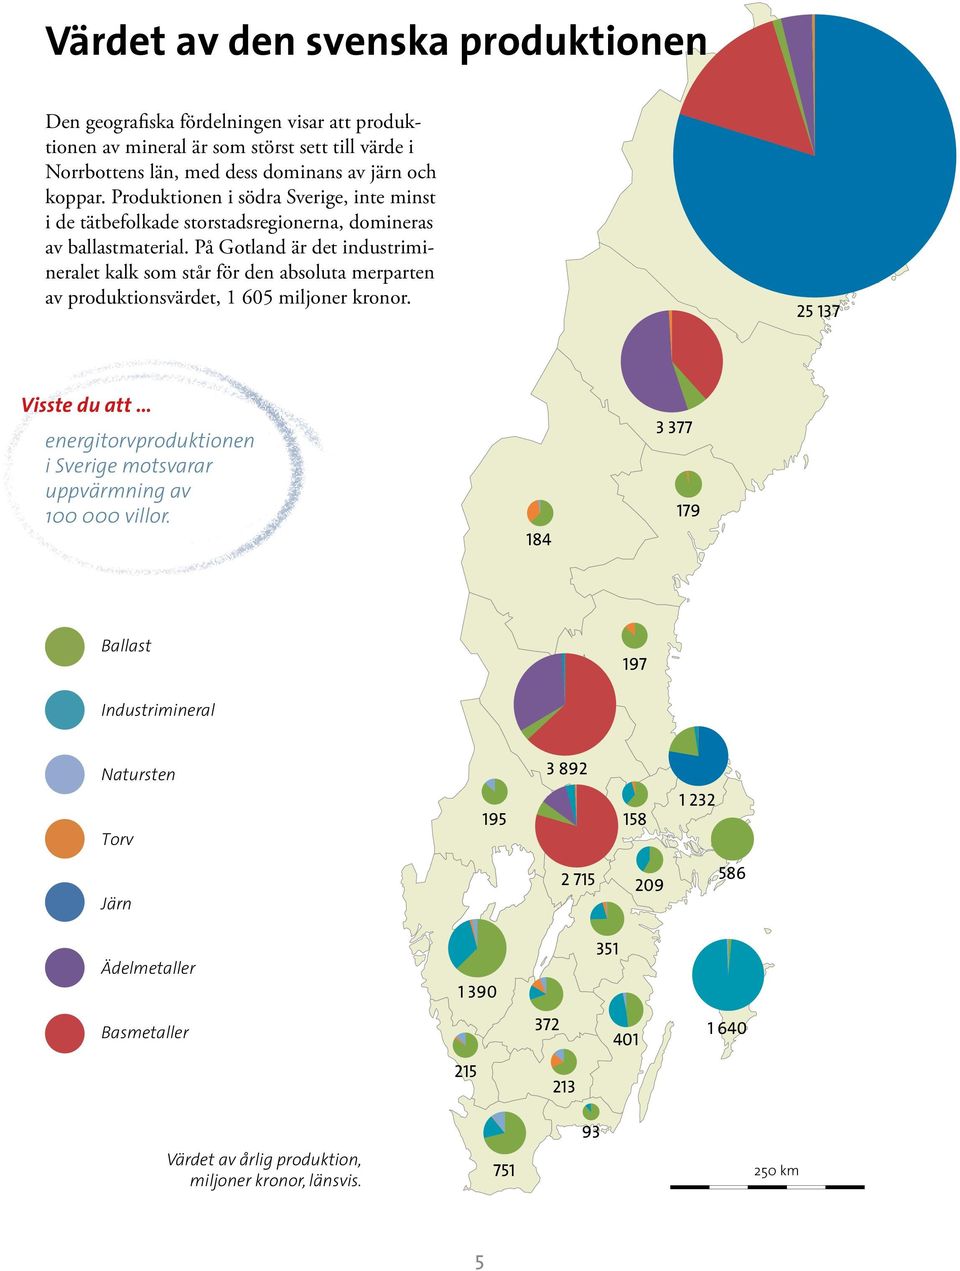 På Gotland är det industrimineralet kalk som står för den absoluta merparten av produktionsvärdet, 1 605 miljoner kronor.